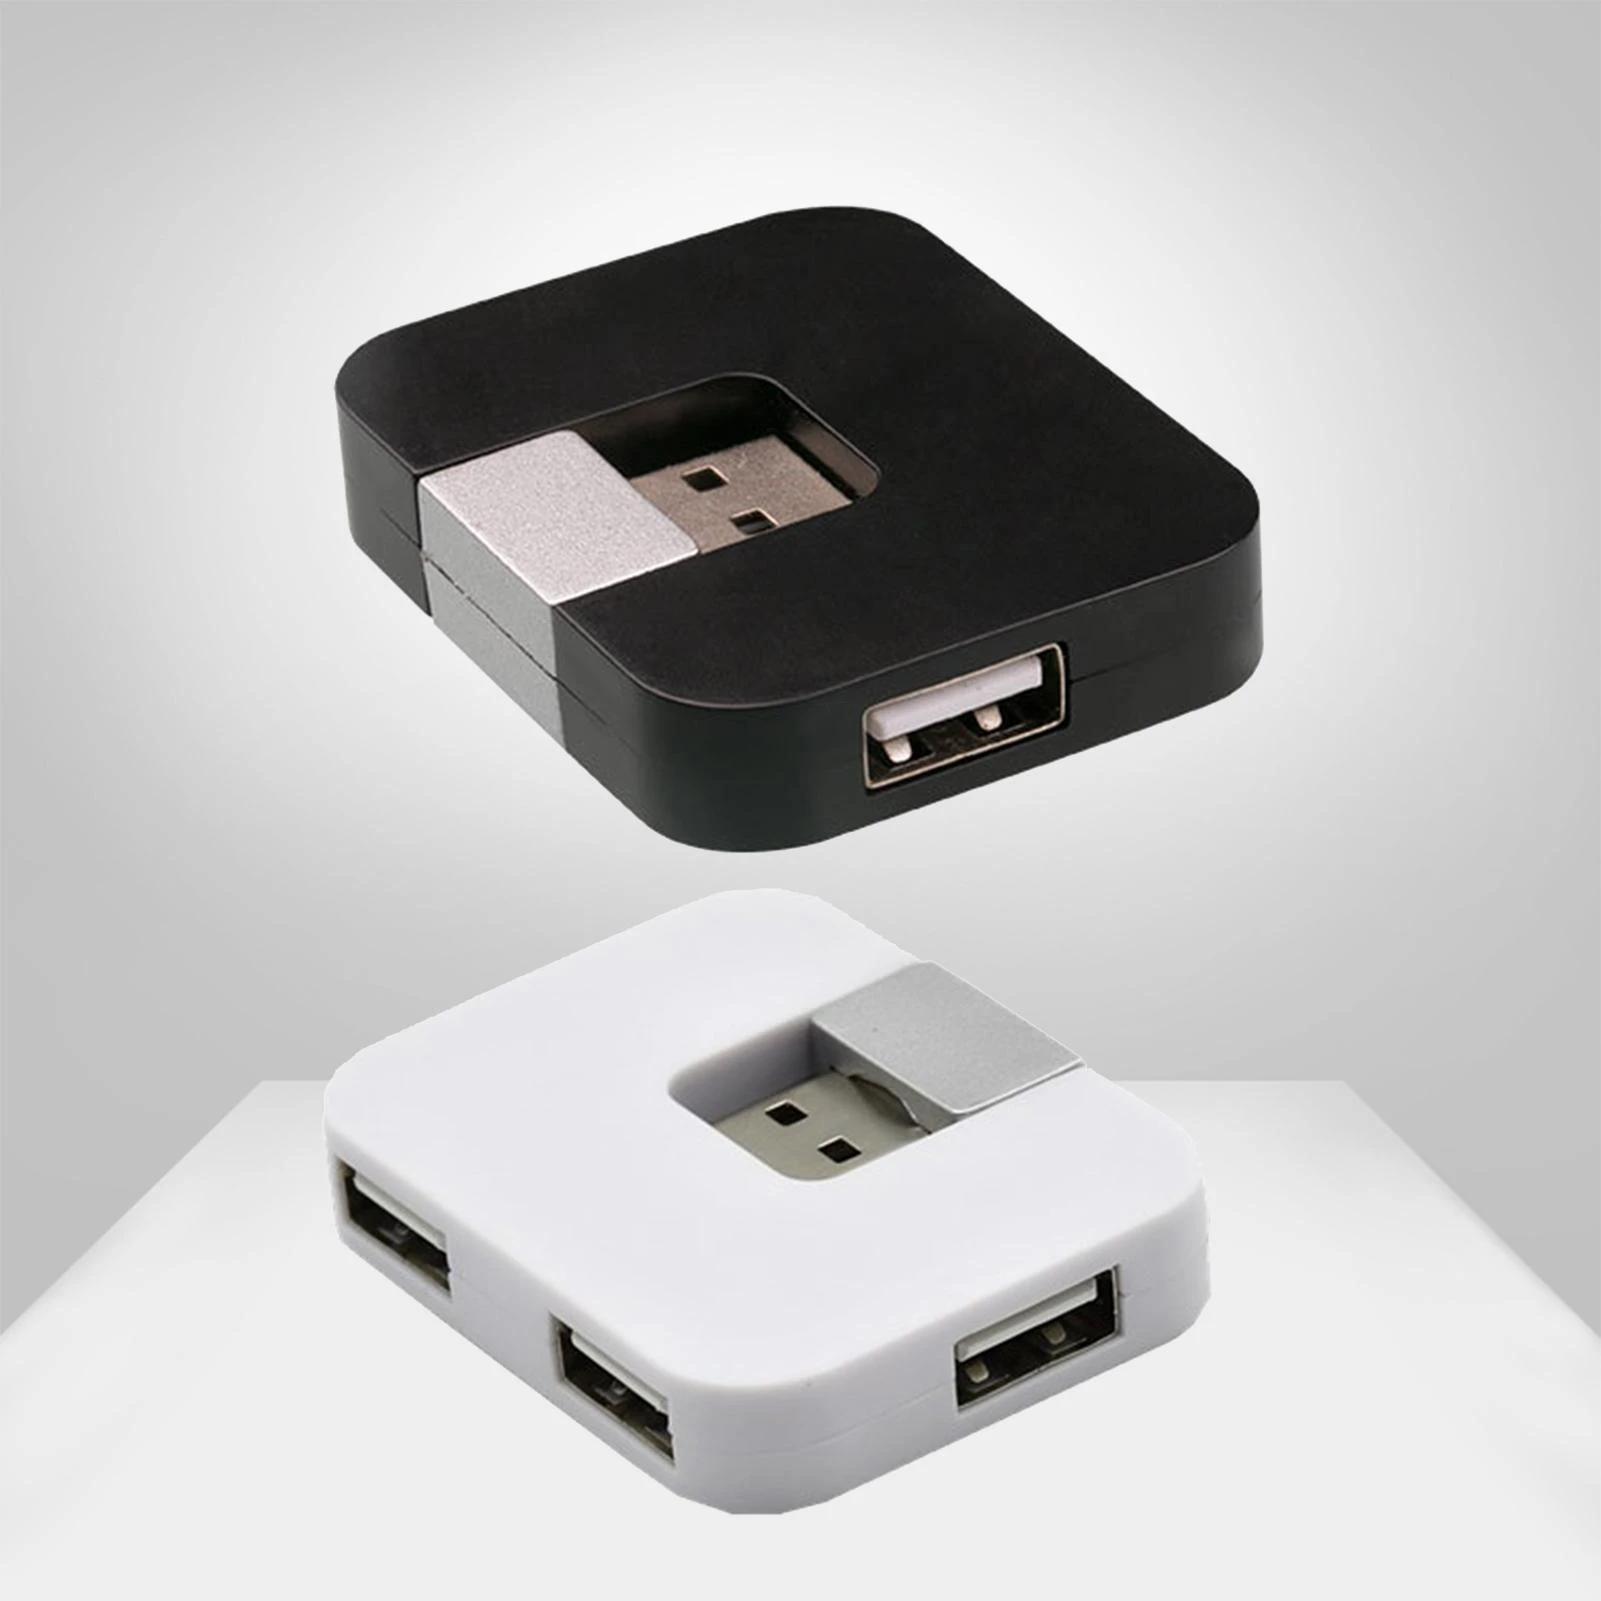 Drehbare USB 2,0 HUB 4 Port USB Splitter Expander Daten Kabel Hub Splitter  Power Adapter USB HUB für Auto Laptop PC mit U Disk|USB Hubs| - AliExpress